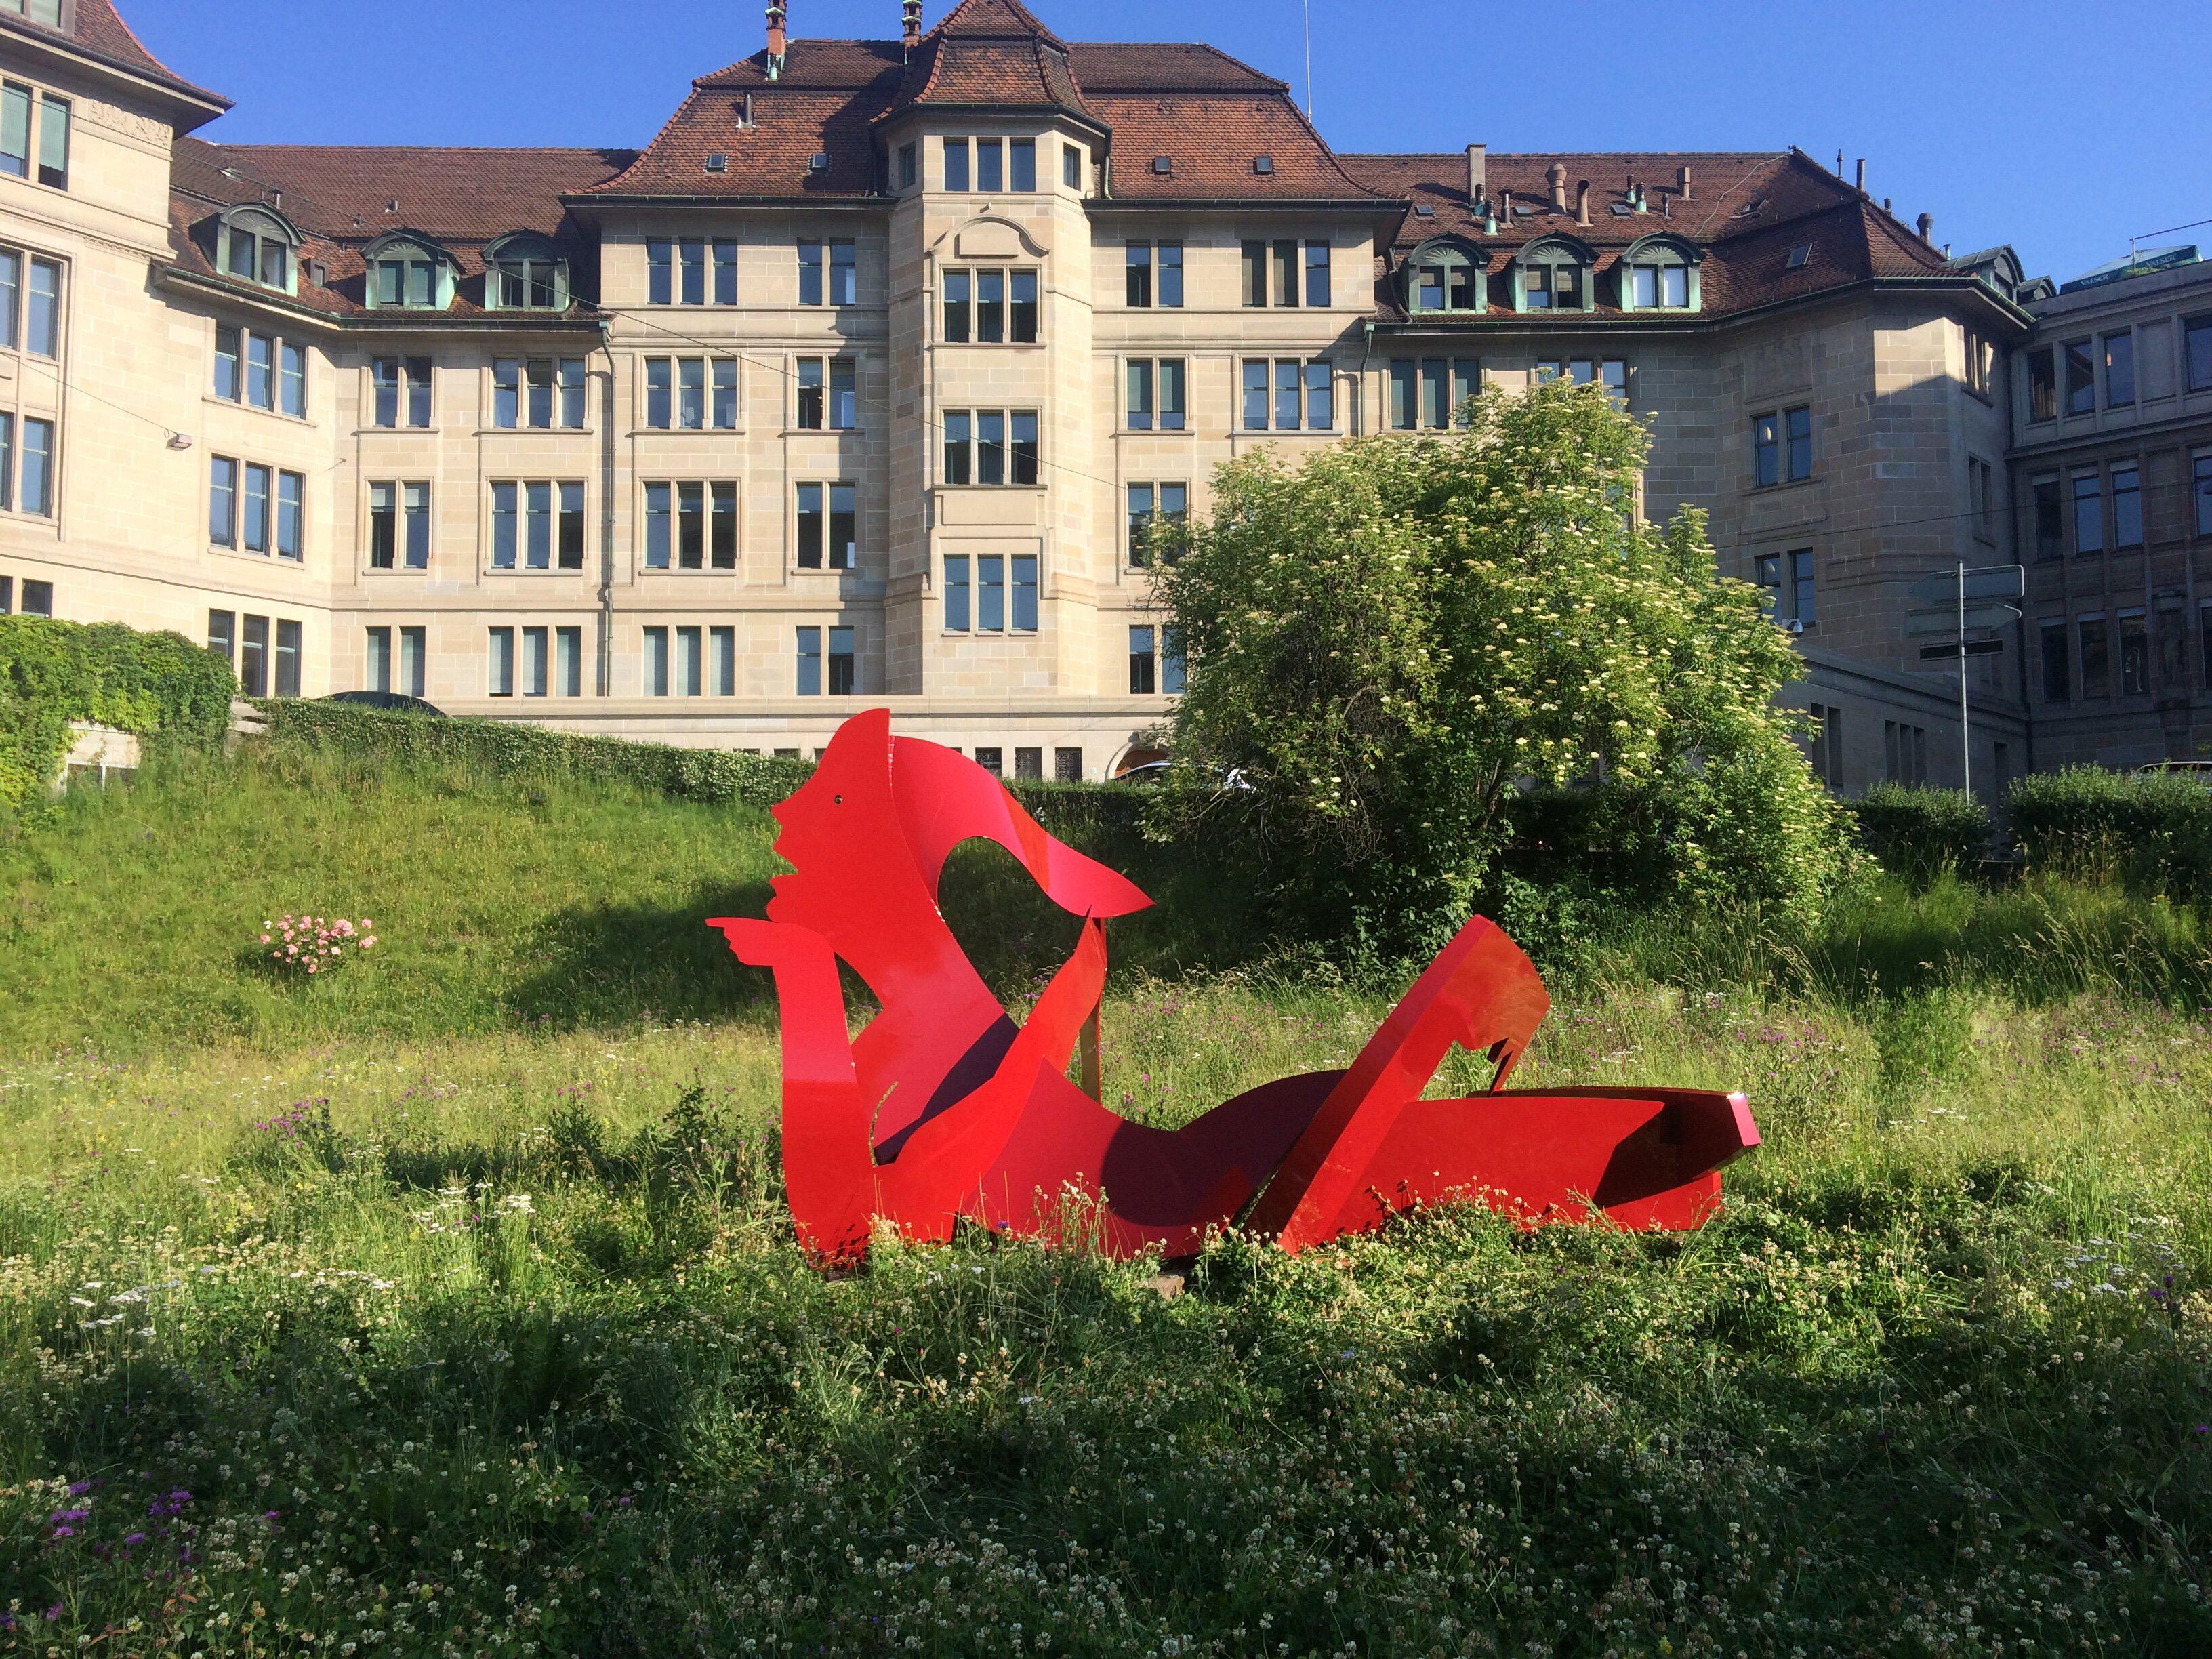 Juno Figurative Outdoor Pop Art sculpture Red Painted Steel Person - Sculpture by Allen Jones 